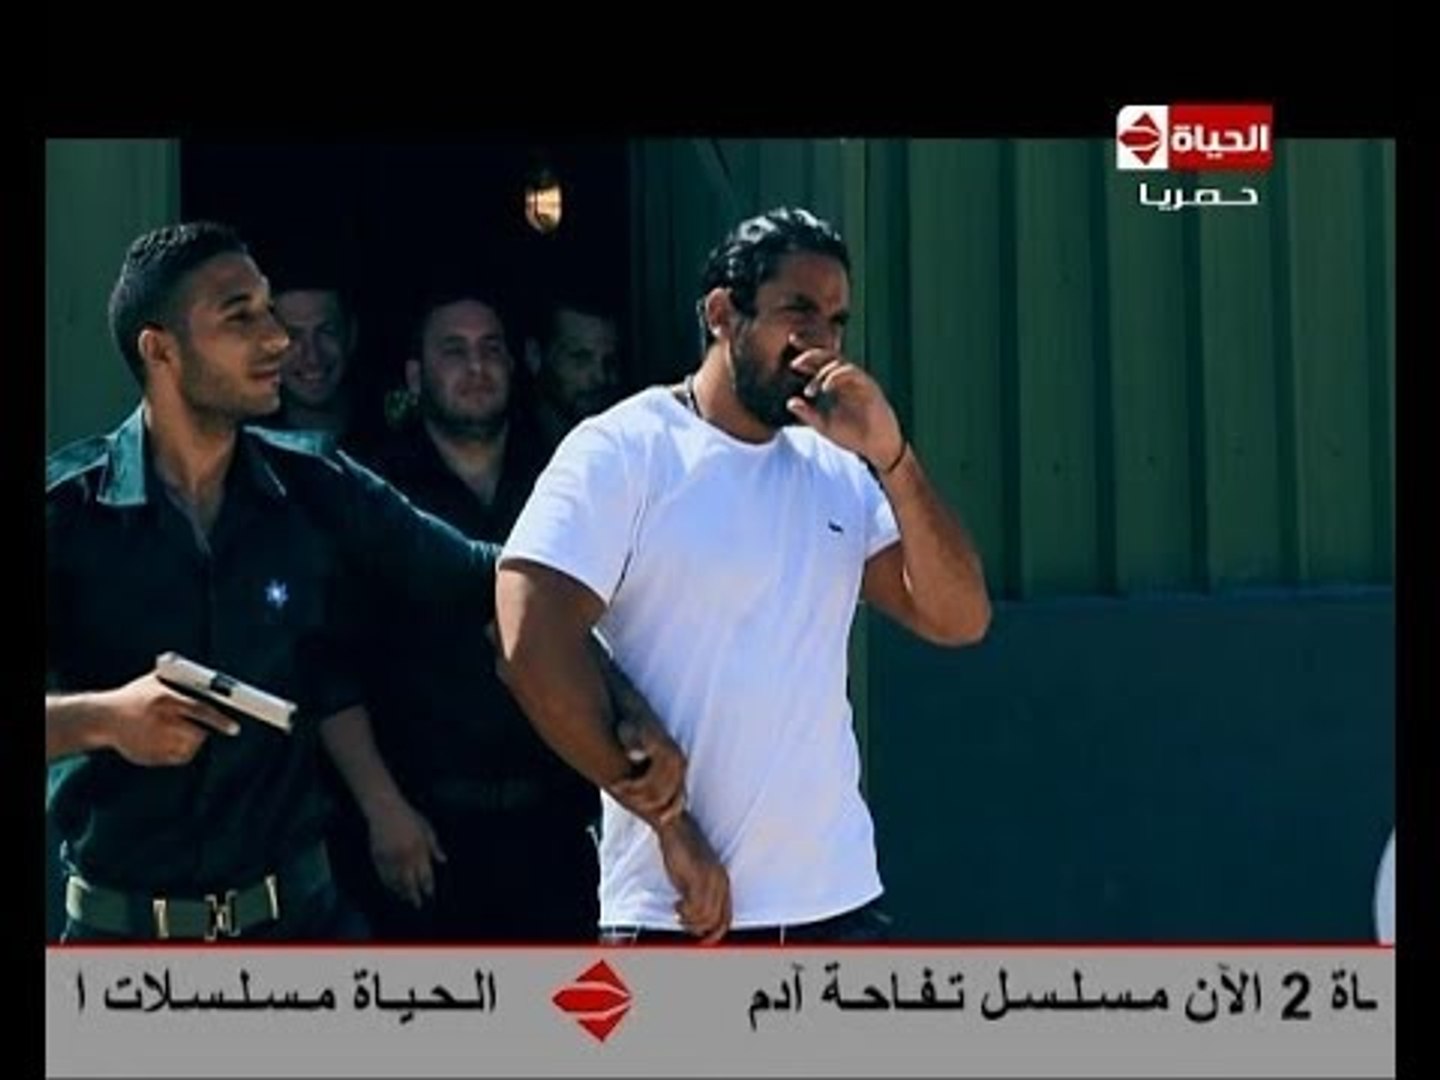 فؤش في المعسكر - الحلقة الحادية عشر ( 11 ) الضحية الفنان أمير كراره - Foesh  fel moaskar - video Dailymotion